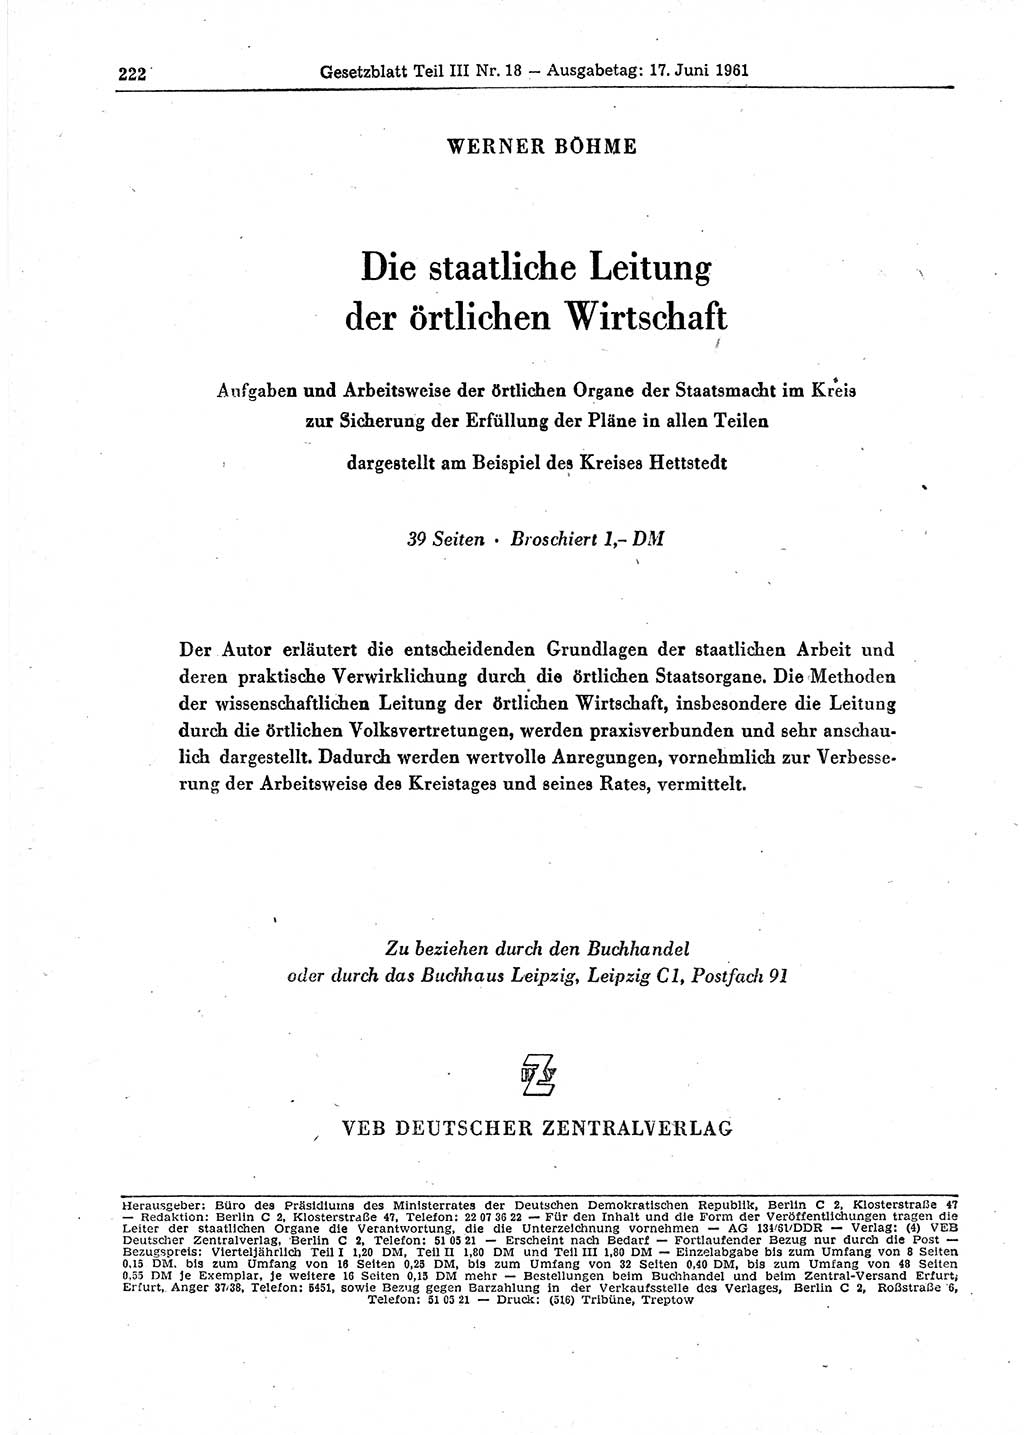 Gesetzblatt (GBl.) der Deutschen Demokratischen Republik (DDR) Teil ⅠⅠⅠ 1961, Seite 222 (GBl. DDR ⅠⅠⅠ 1961, S. 222)